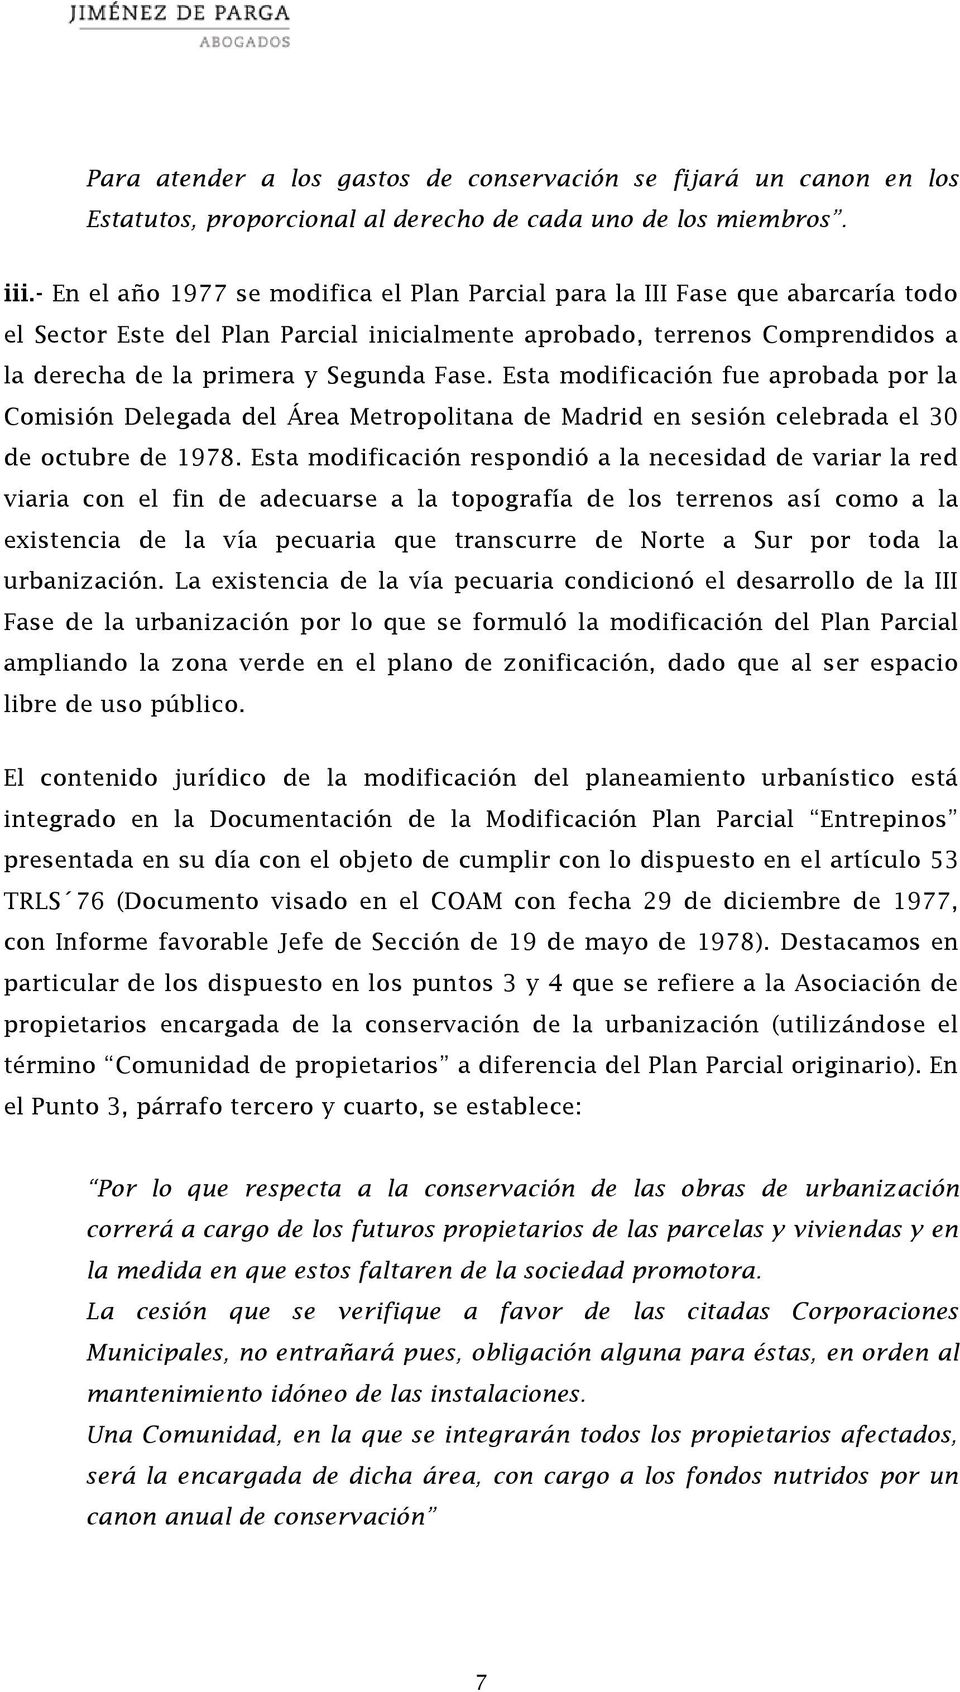 Esta modificación fue aprobada por la Comisión Delegada del Área Metropolitana de Madrid en sesión celebrada el 30 de octubre de 1978.